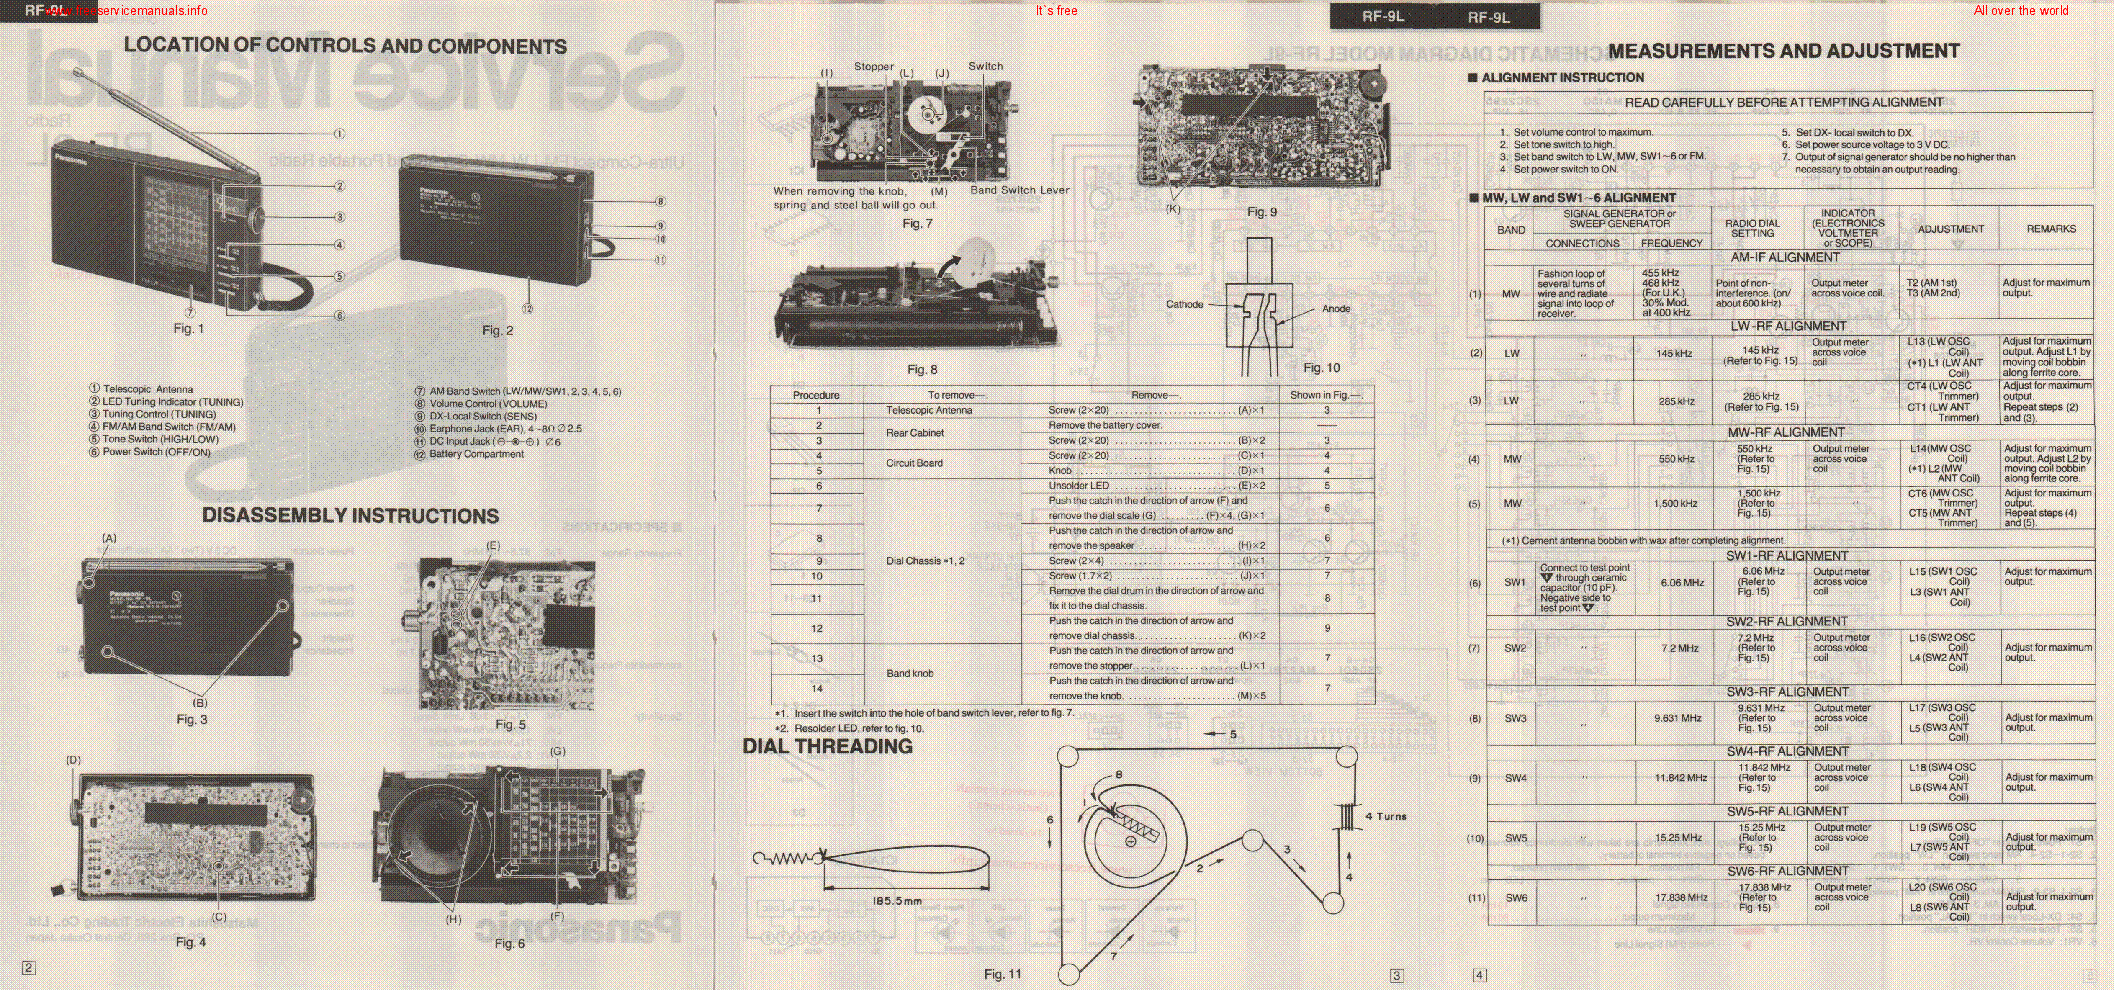 PANASONIC RF-9L SM service manual (2nd page)